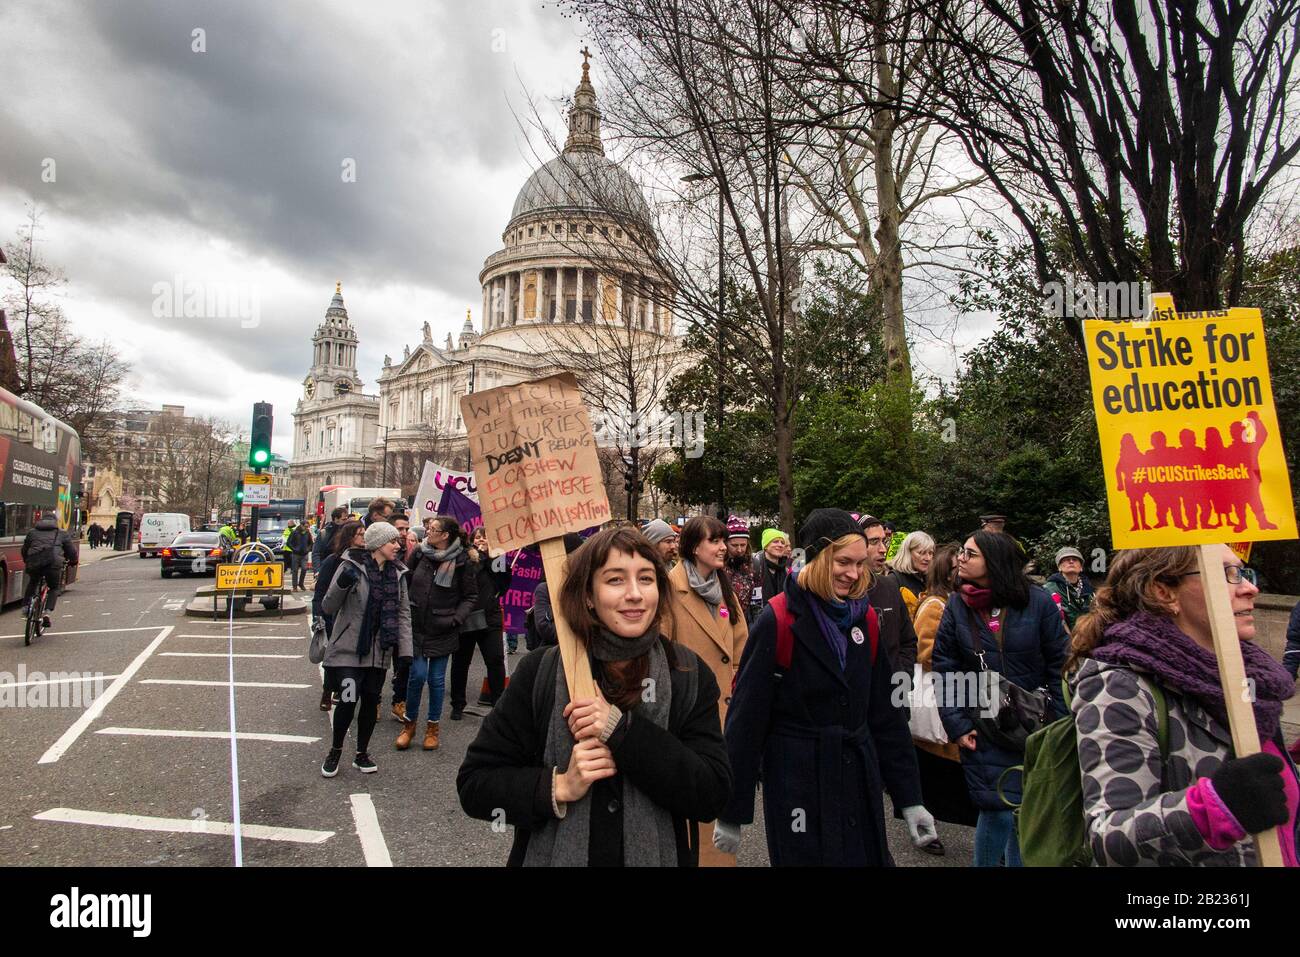 26th febbraio 2020 - I Manifestanti attraversano la città di Londra con la cattedrale di St Paul sul "arco per l'istruzione", in piedi sulla città "gatti grassi" Foto Stock